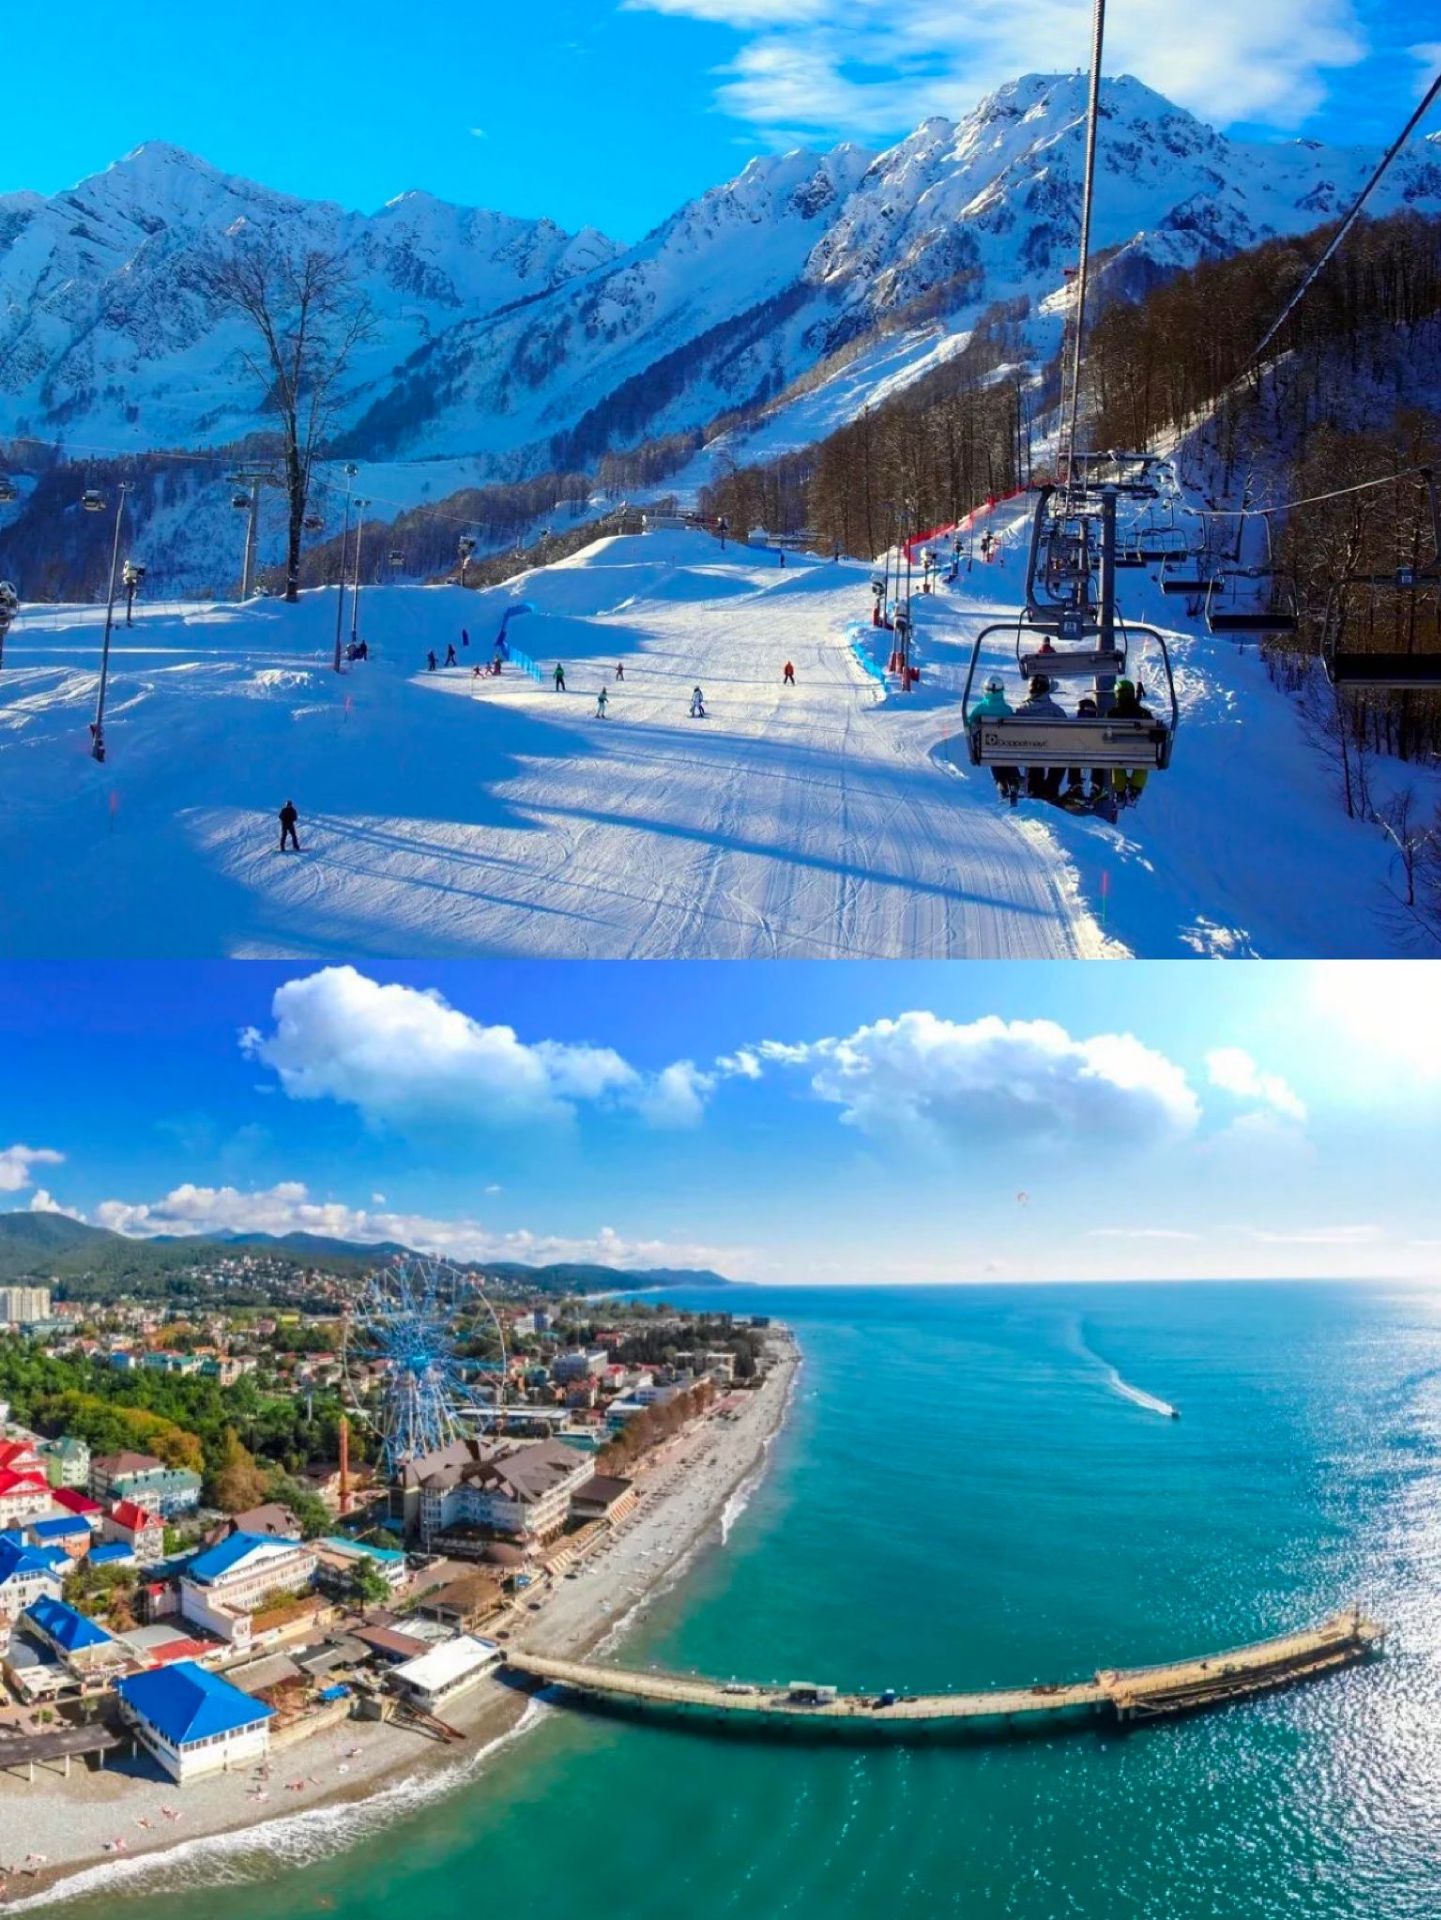 【携程攻略】索契黑海景点,【索契】滑雪度假胜地 海滨浴场之都 夏天